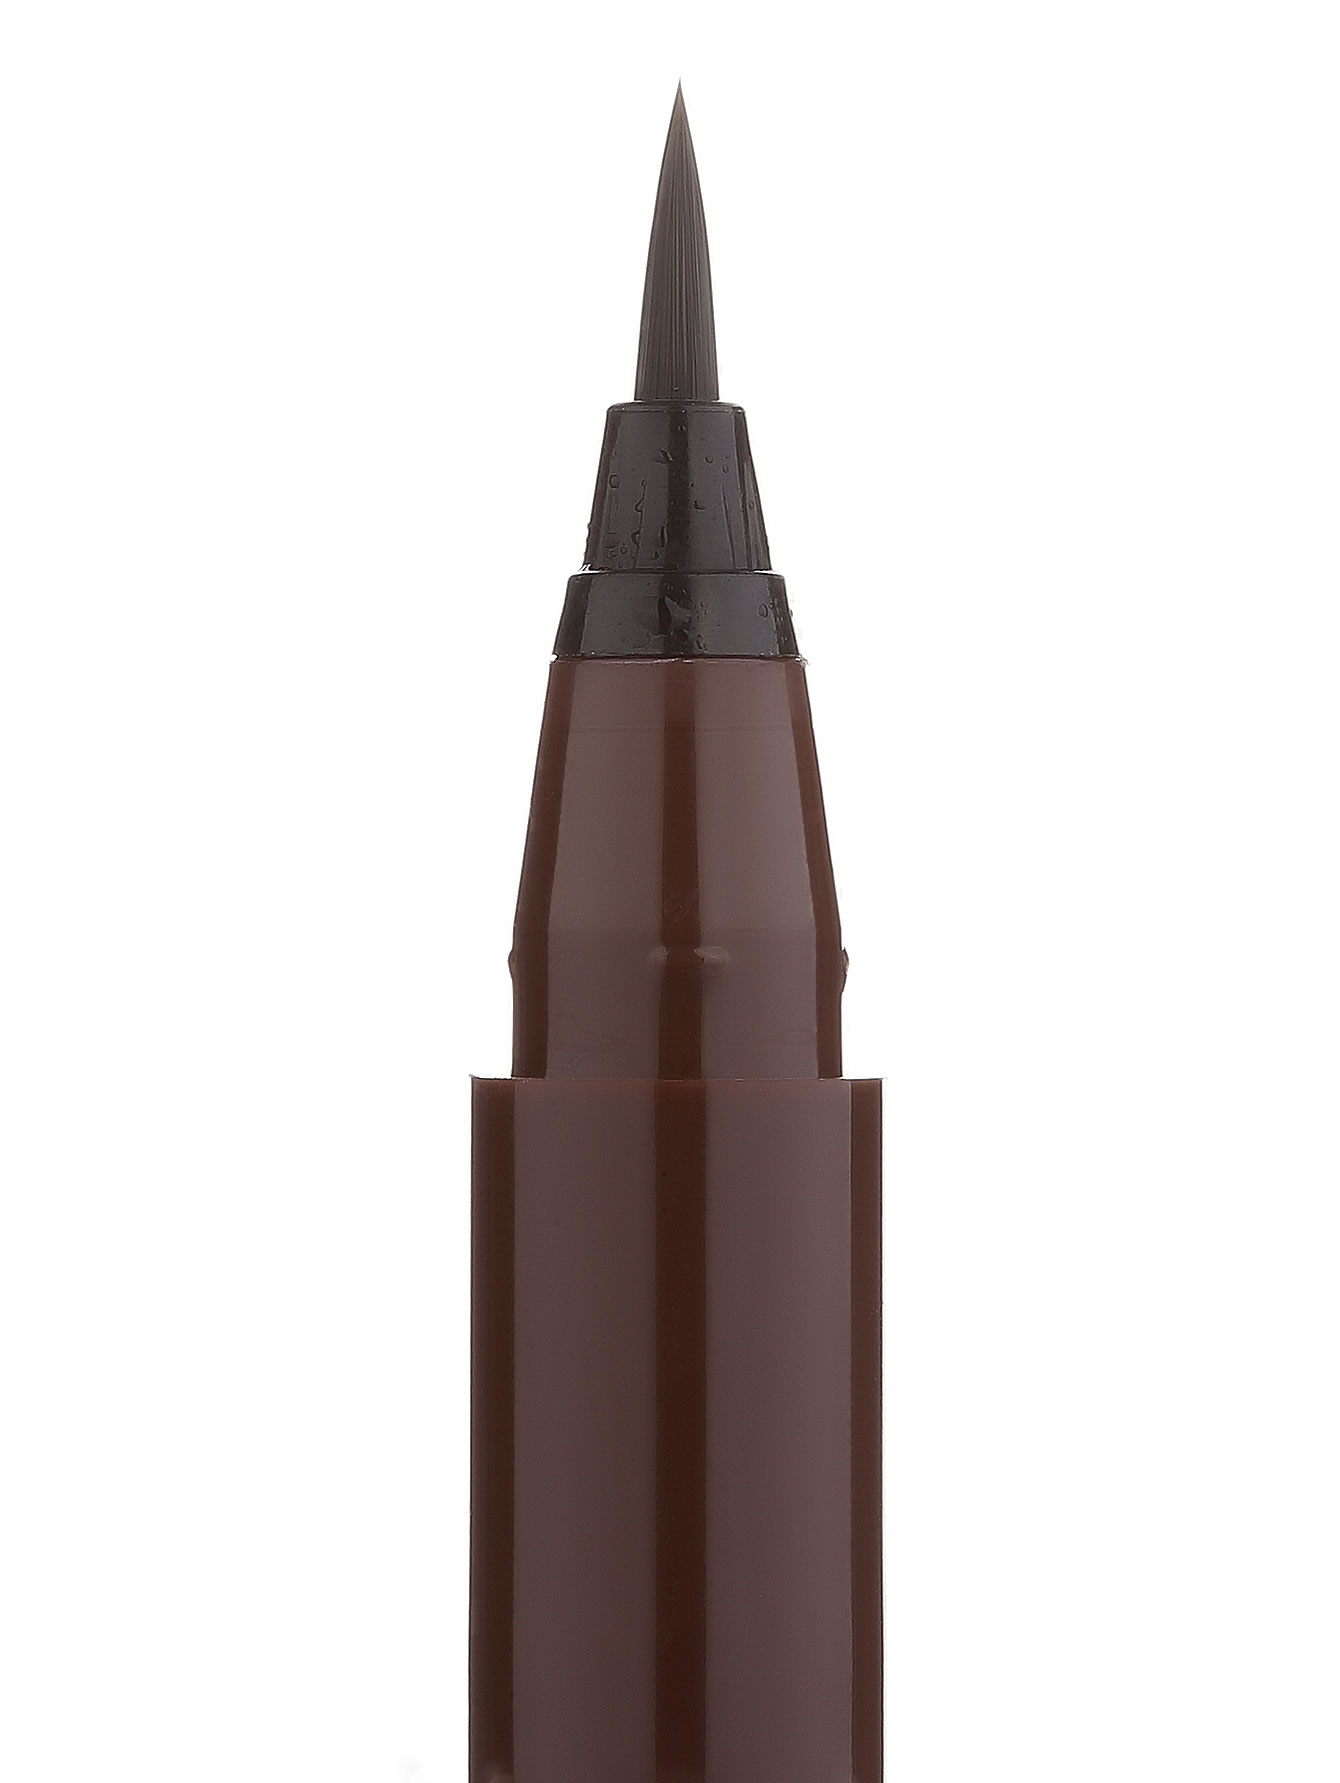  Жидкая подводка для век - Brown, Pretty Easy Pen, 2ml - Модель Верх-Низ